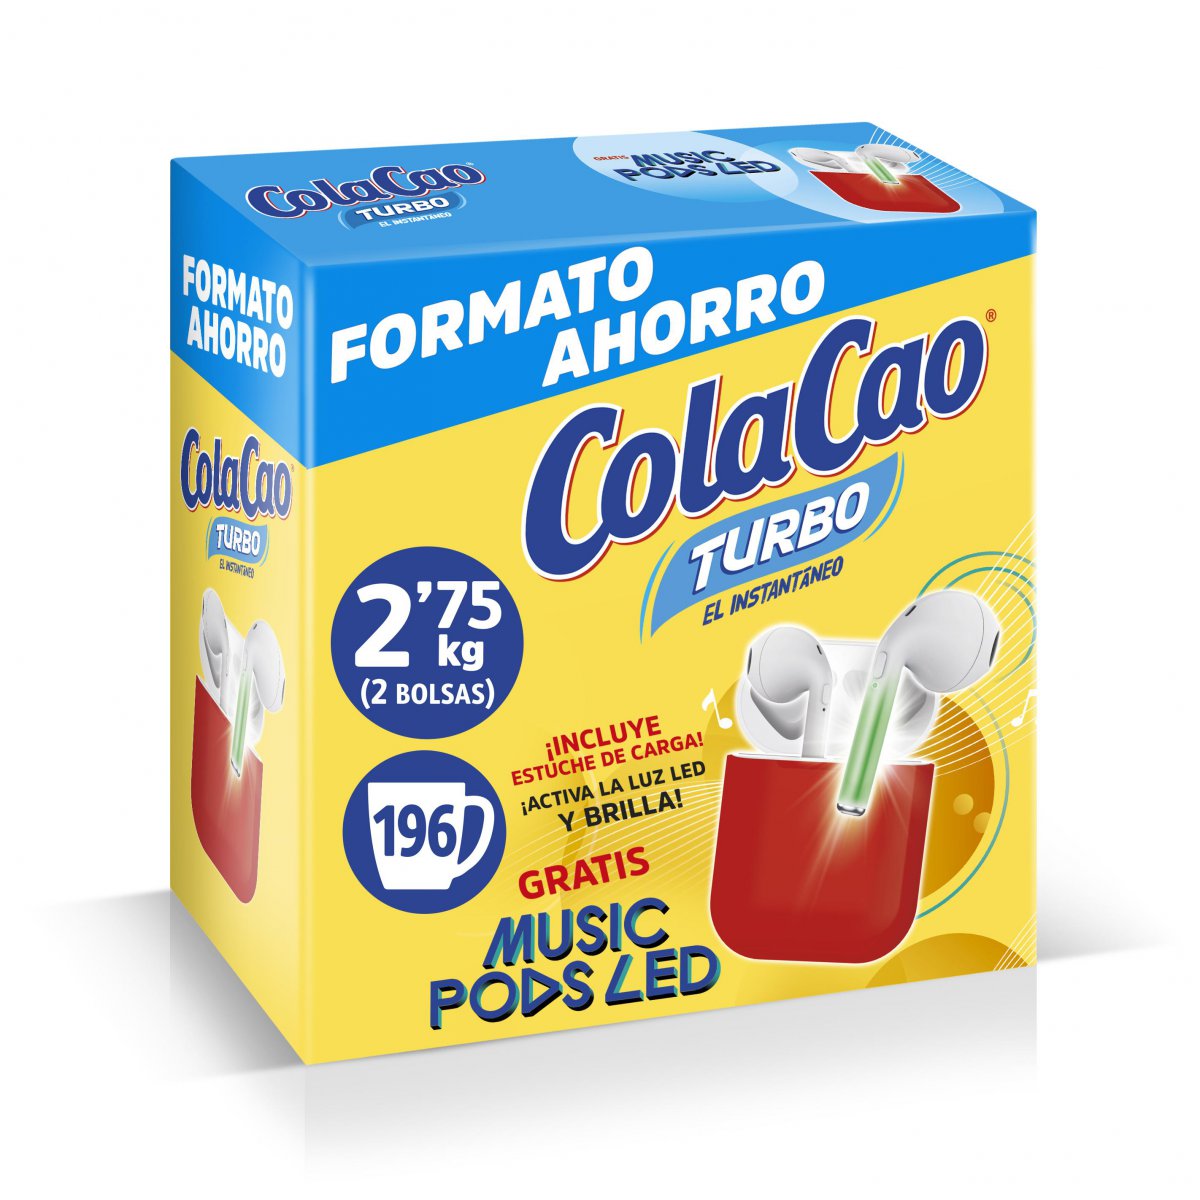 Comprar Colacao turbo 2.75kg en Cáceres